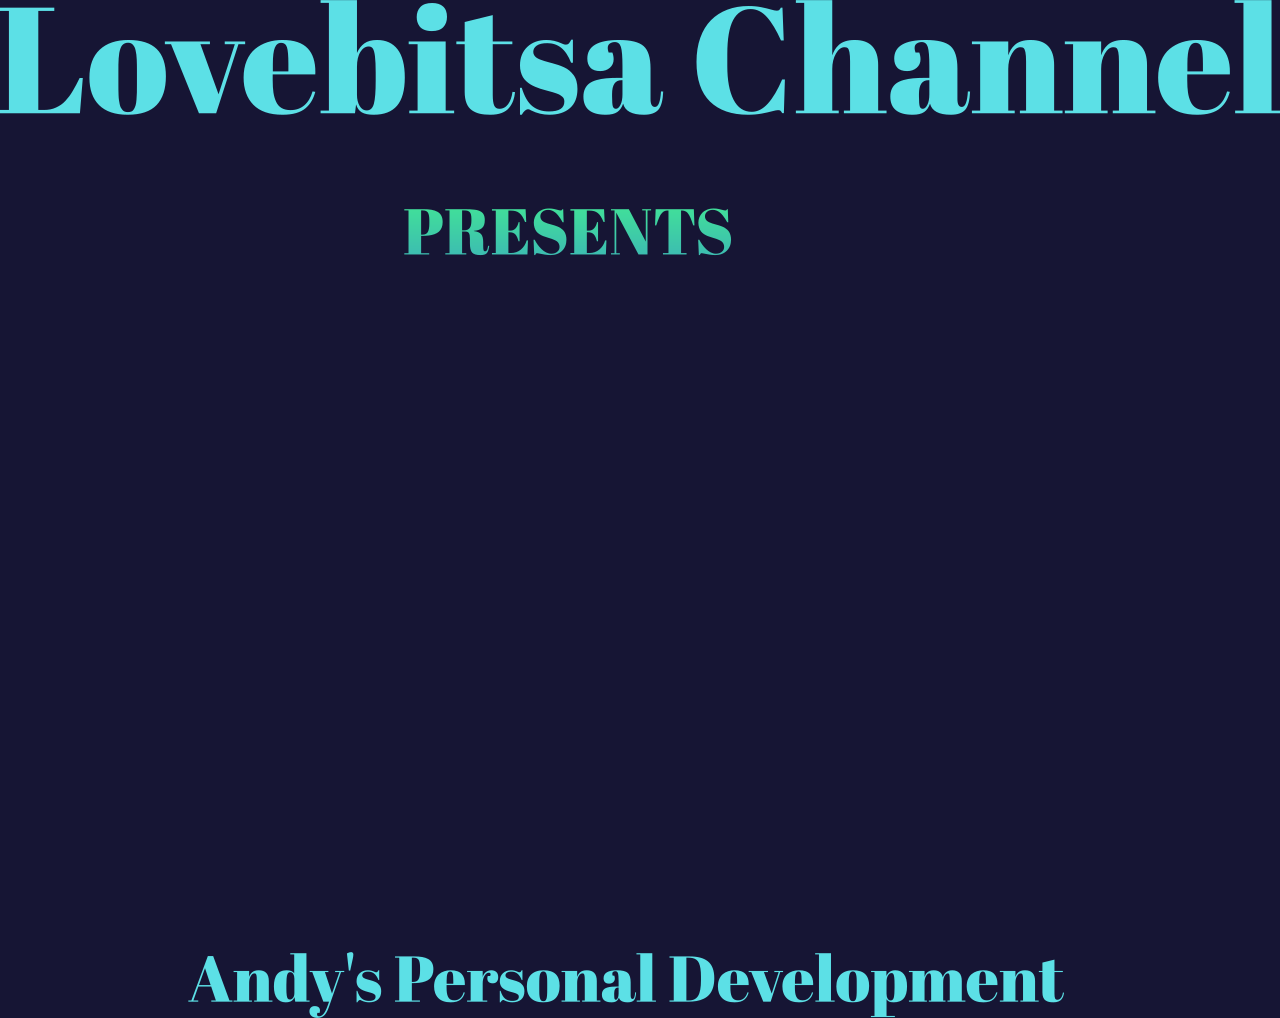 Lovebitsa Channel's web page